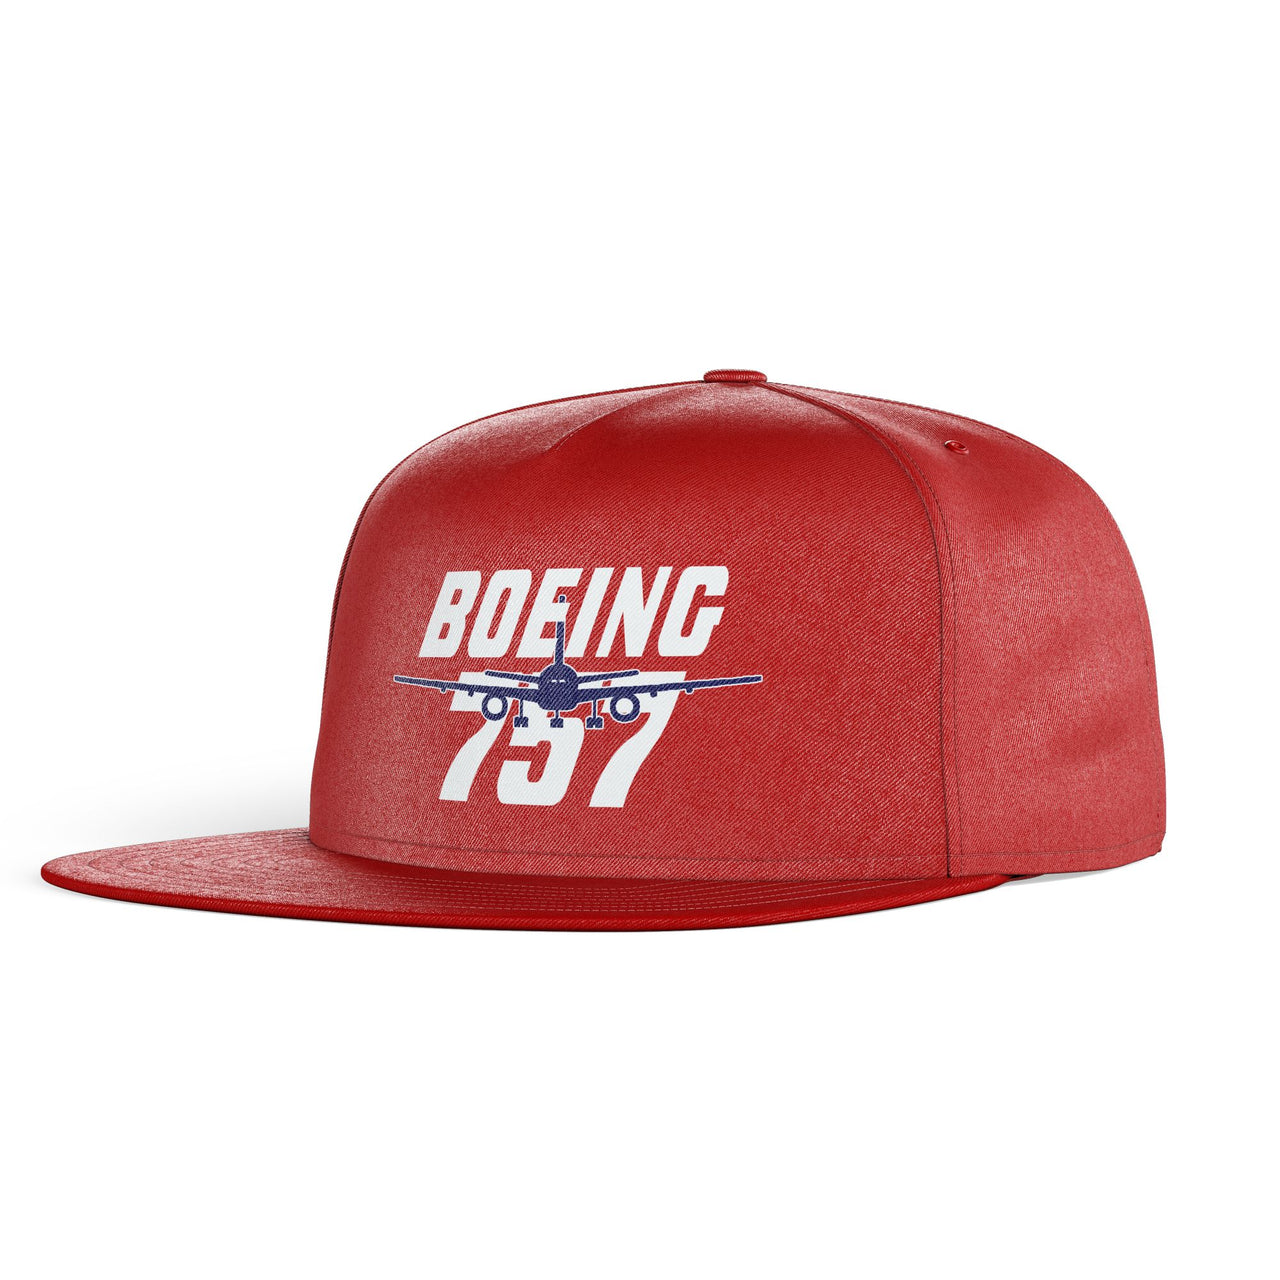 Amazing Boeing 757 Designed Snapback Caps & Hats